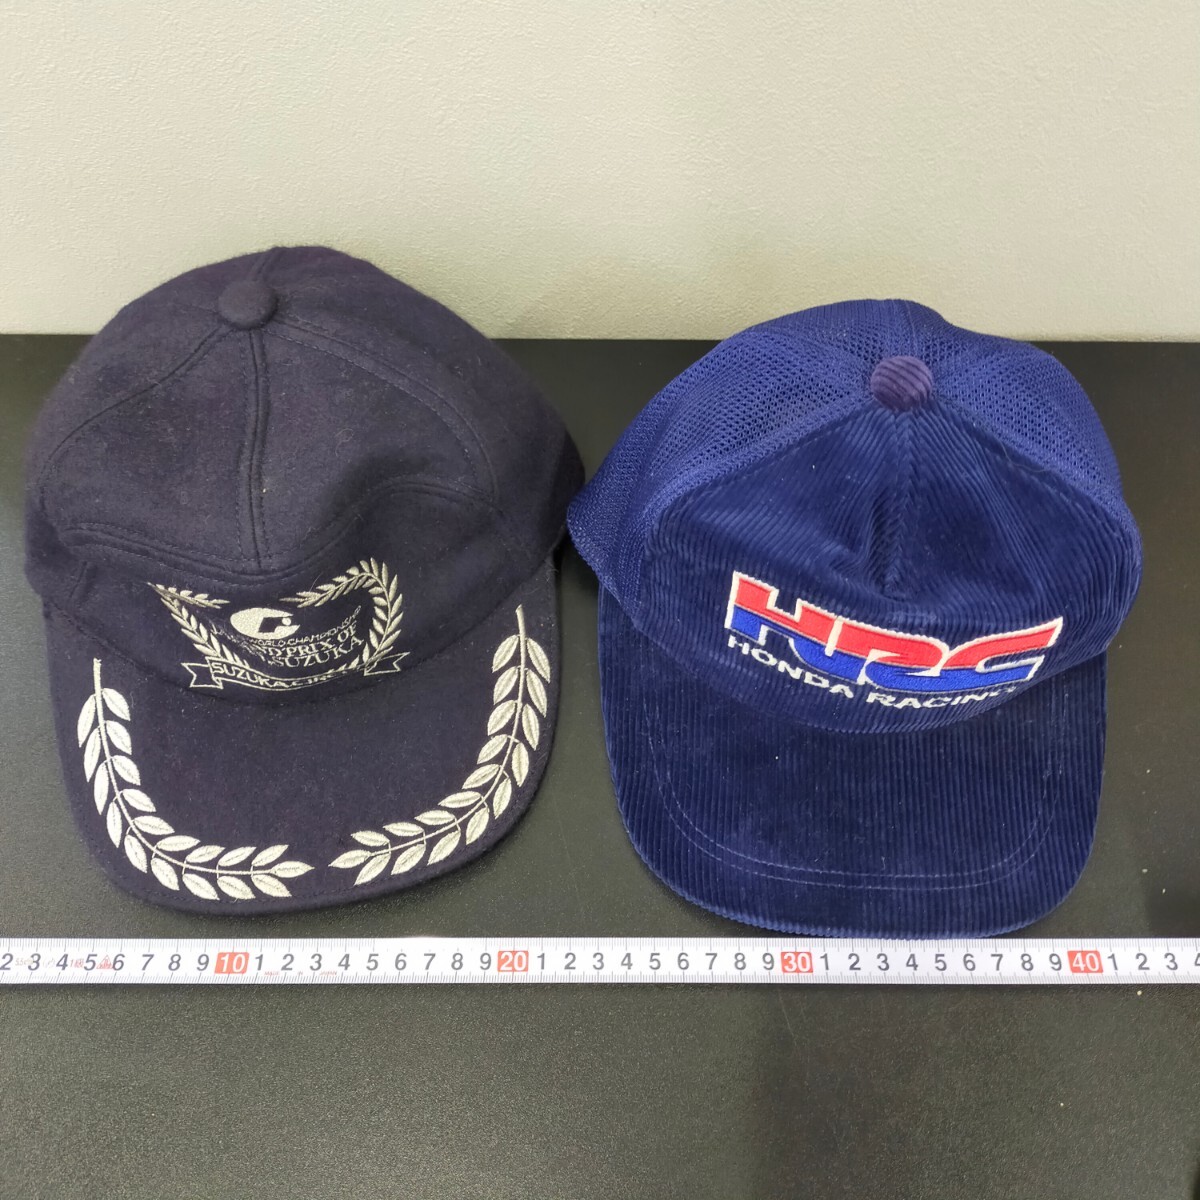 su1459 оригинальный шляпа HONDA колпак HRC Honda RACING рейсинг Suzuka circuit Grand Prix 89 год подлинная вещь годы предмет ценный сетка 